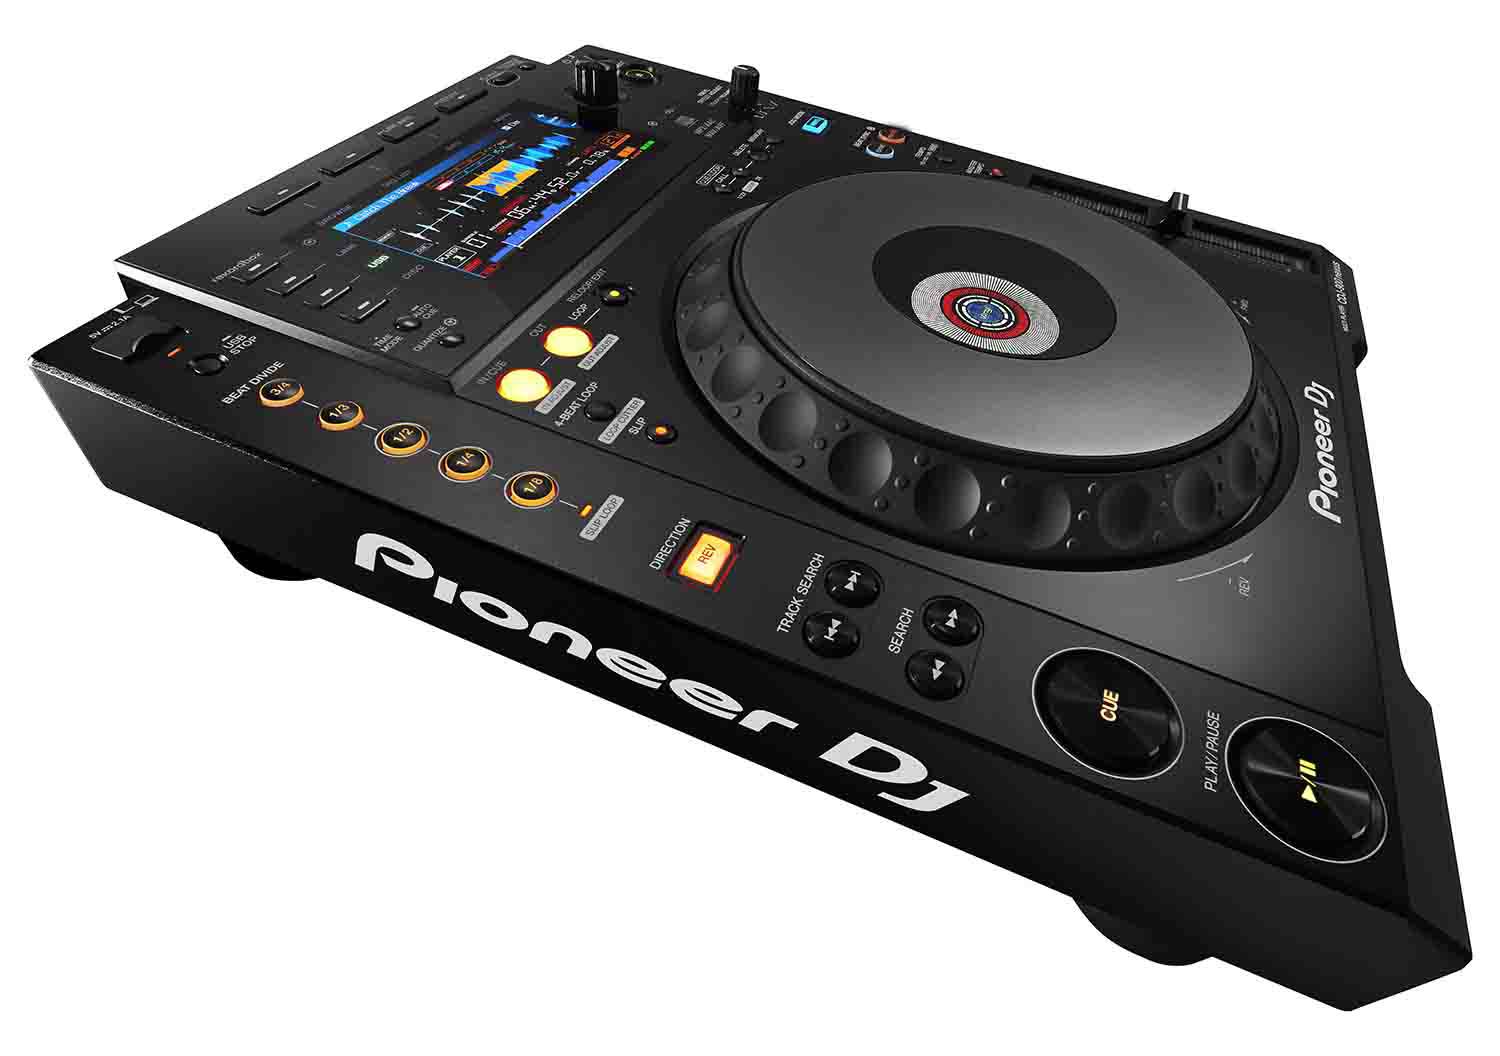 Pioneer DJ CDJ-900NXS Professional DJ Multi Player with Disc Drive - Hollywood DJ